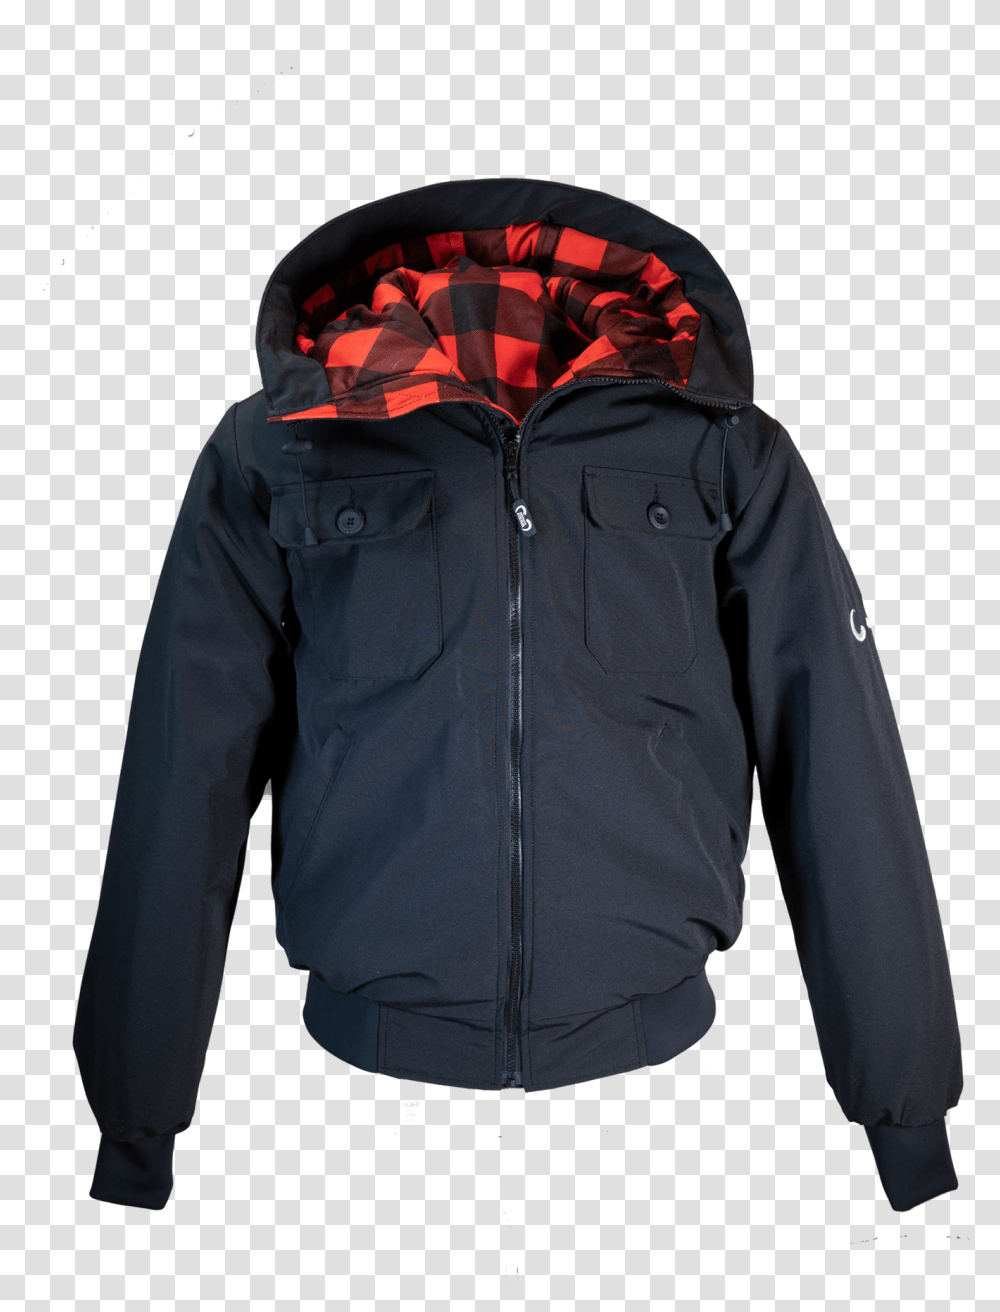 Bison Bomber Sweater, Clothing, Apparel, Jacket, Coat Transparent Png